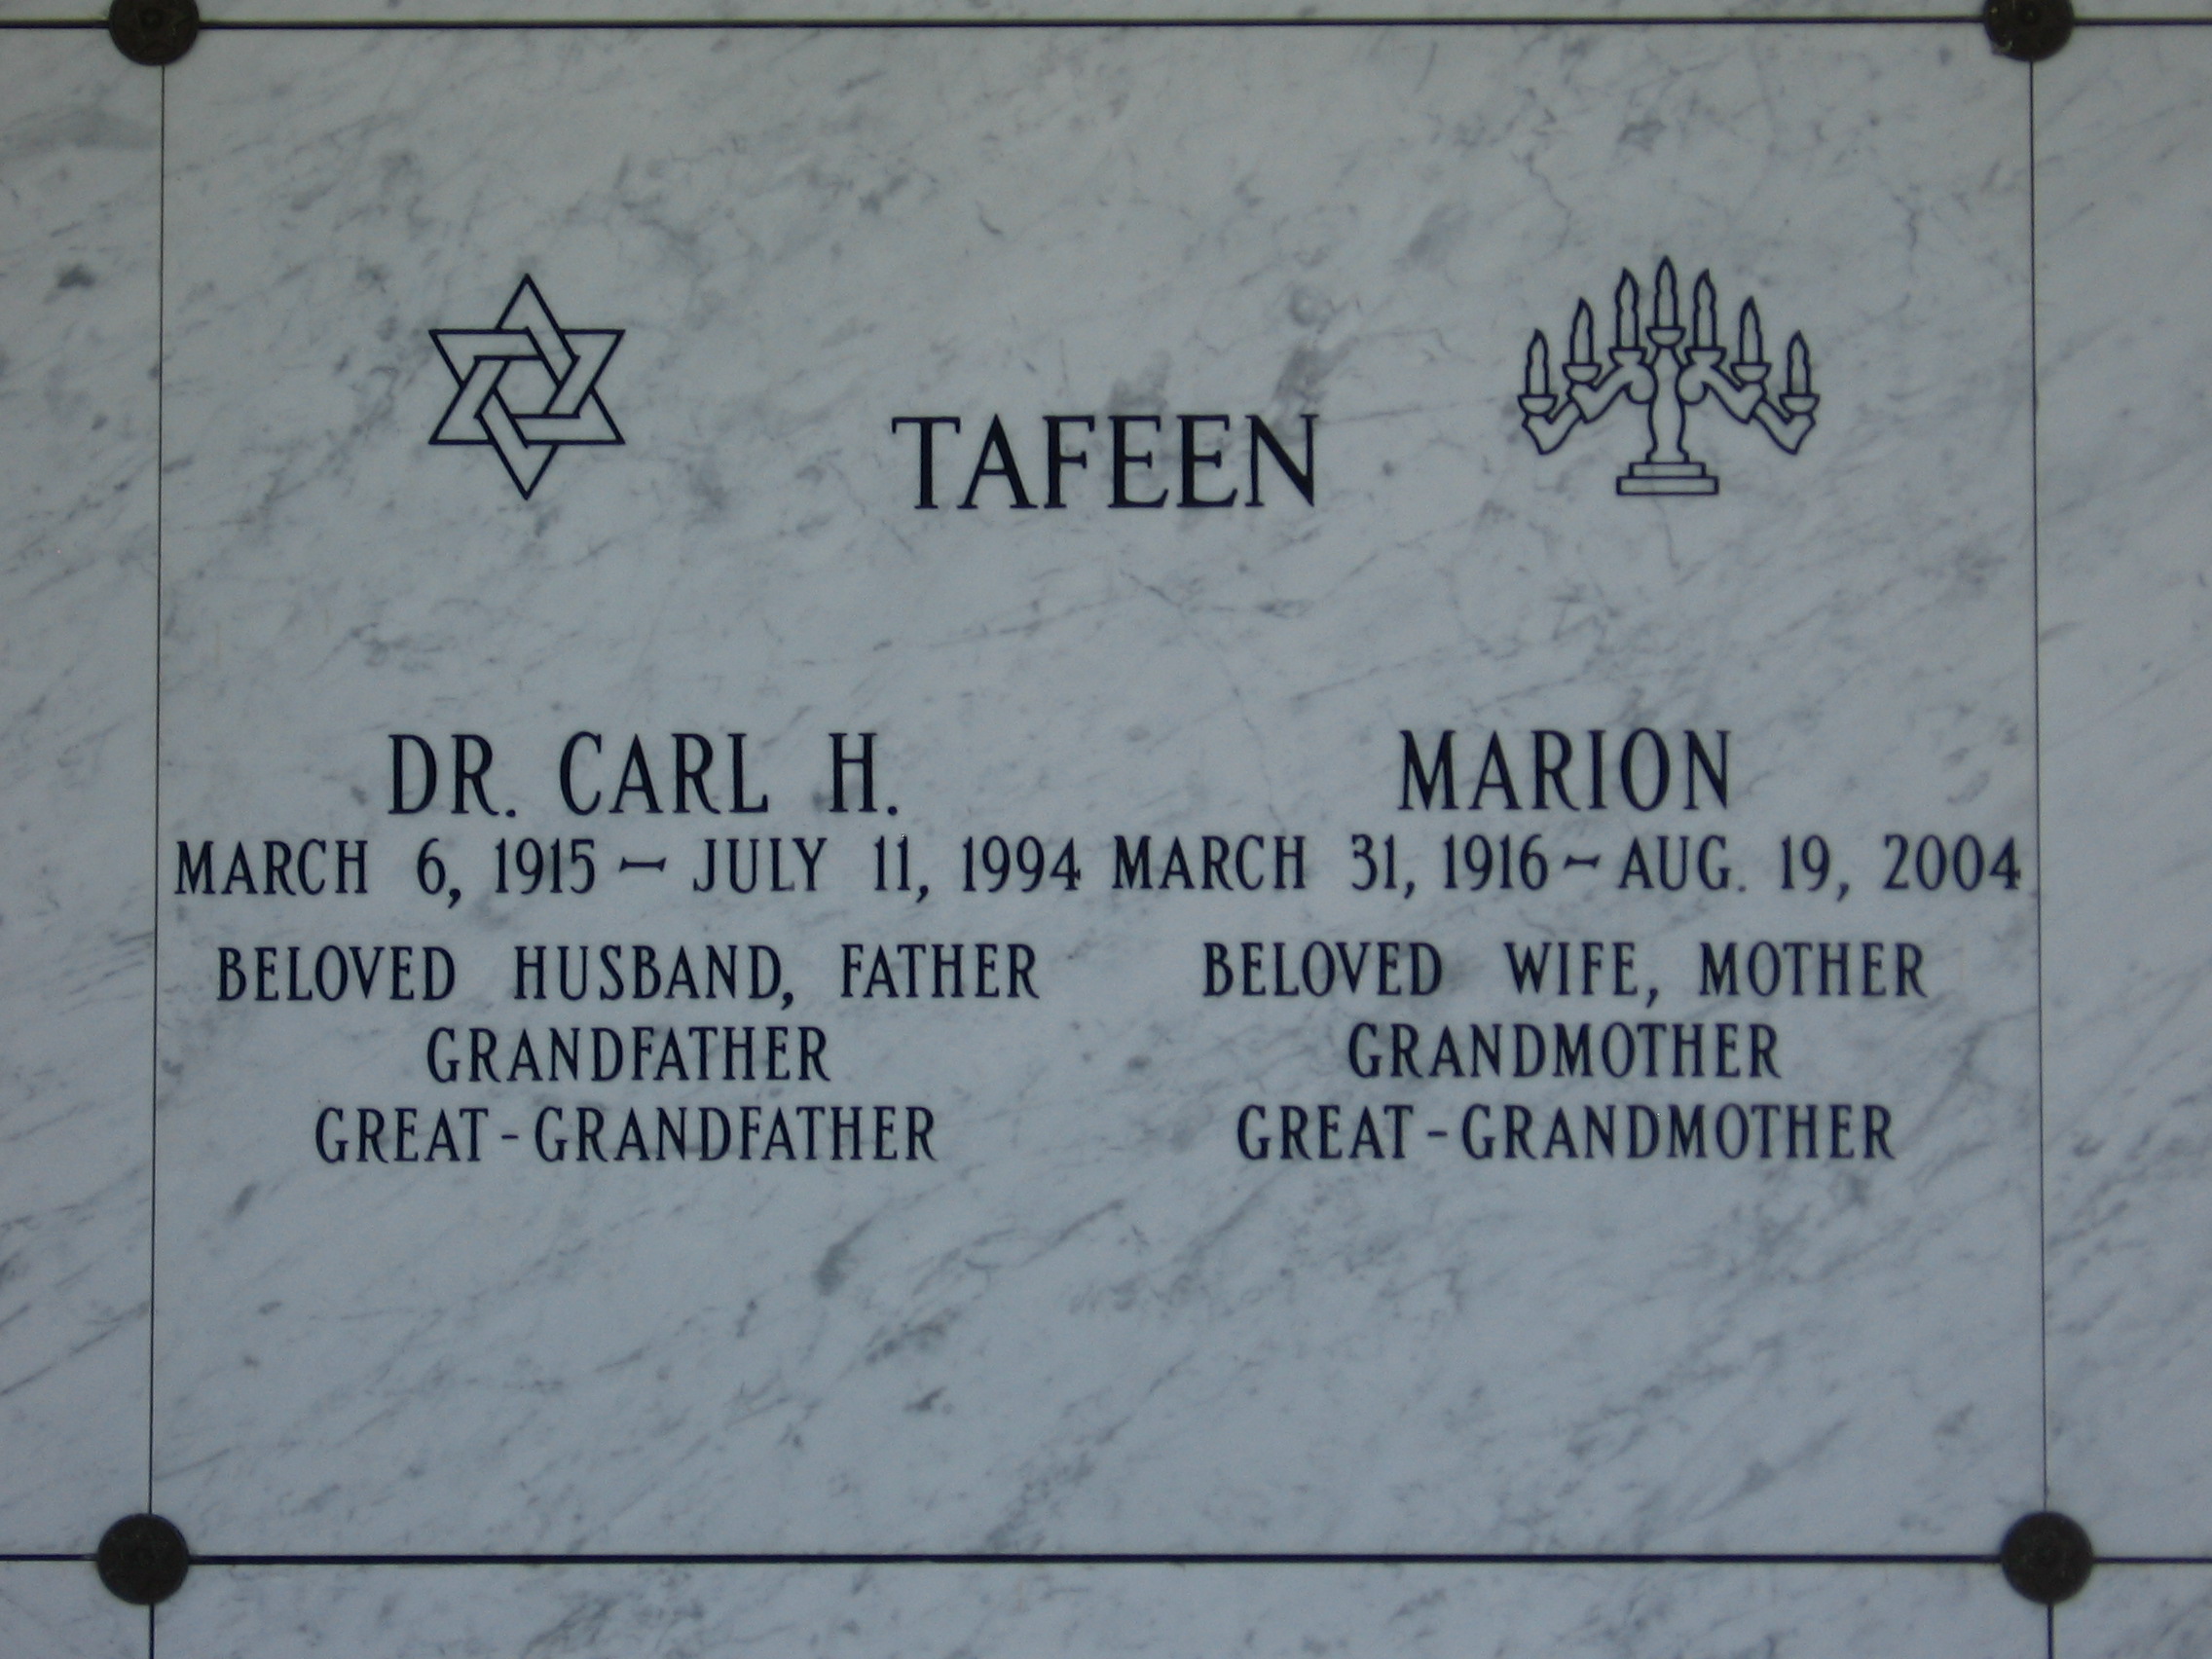 Dr Carl H Tafeen